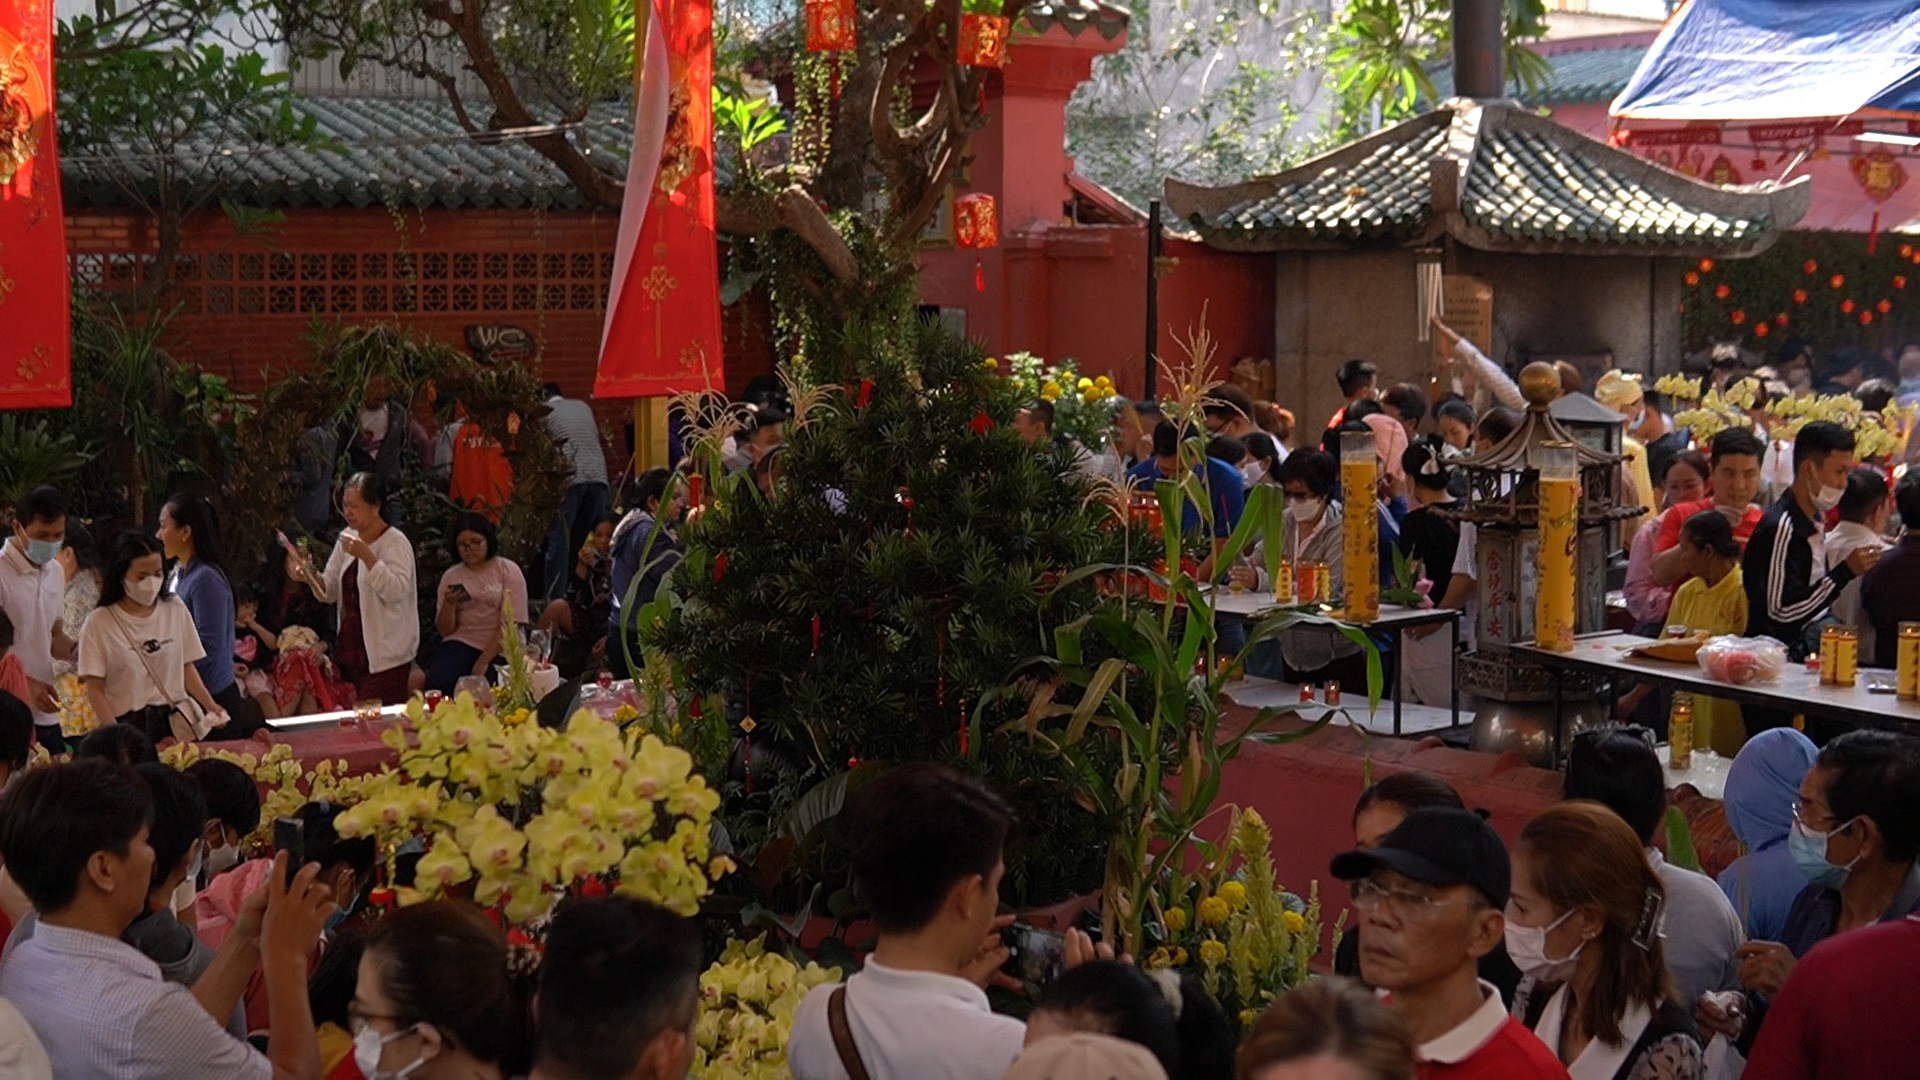 Hàng ngàn người đội nắng đợi đến giữa trưa để vào chùa cầu an ngày vía Ngọc Hoàng- Ảnh 4.